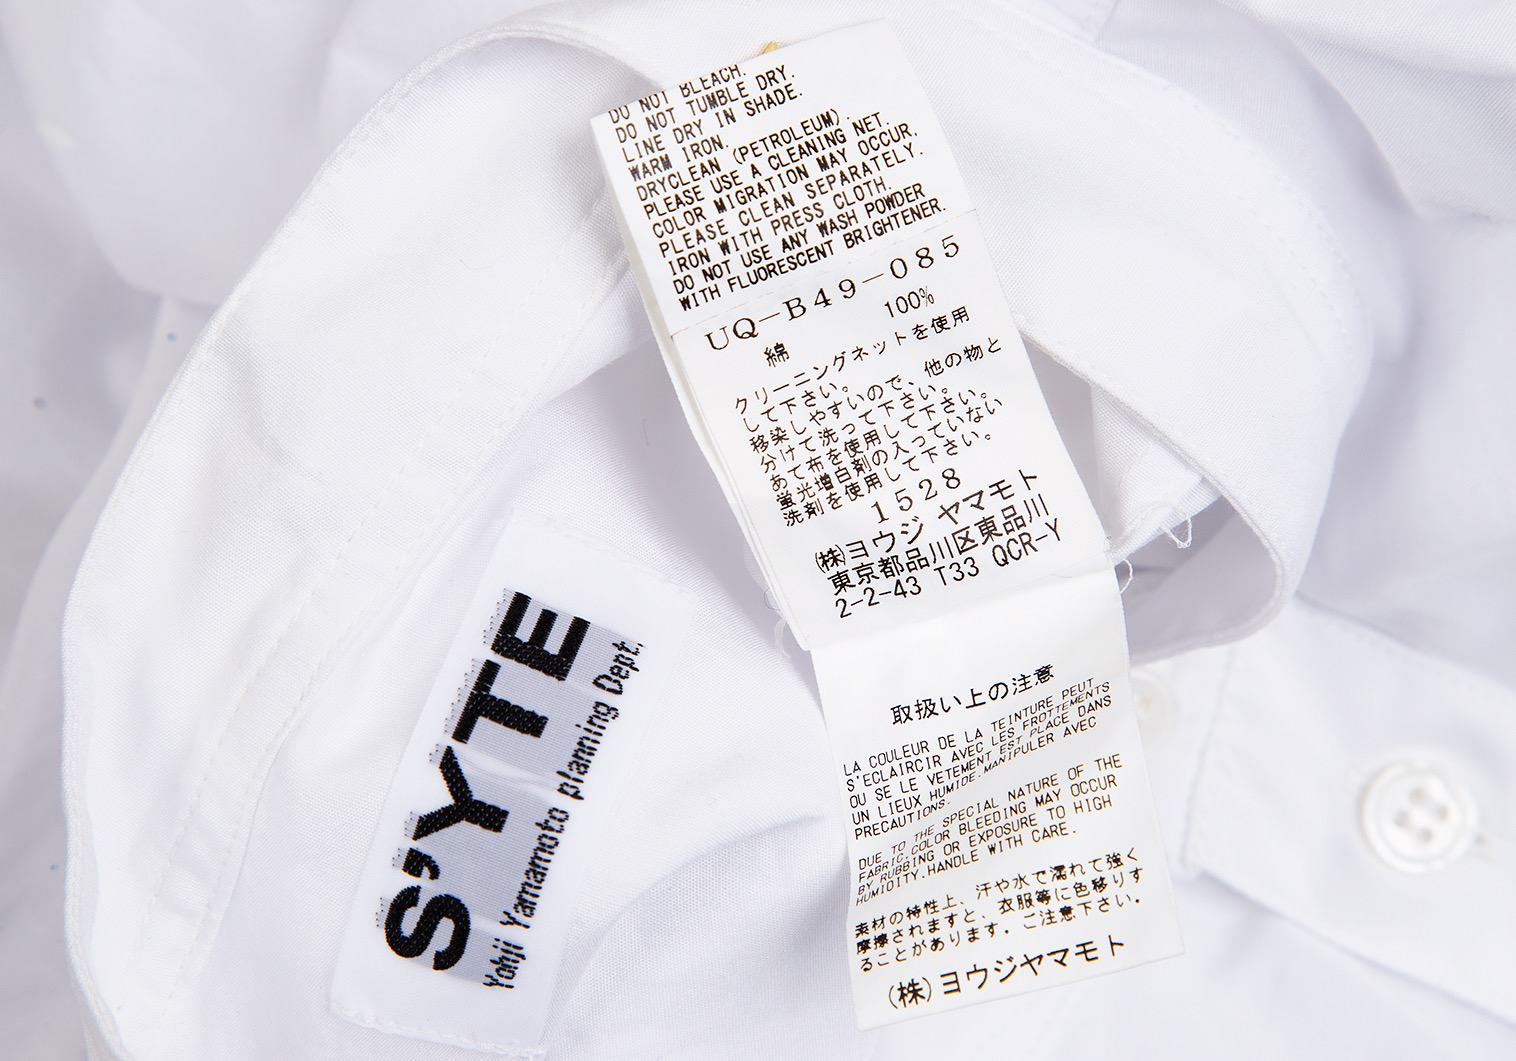 【完売品】S'YTE スプラッシュペイント ロングシャツ